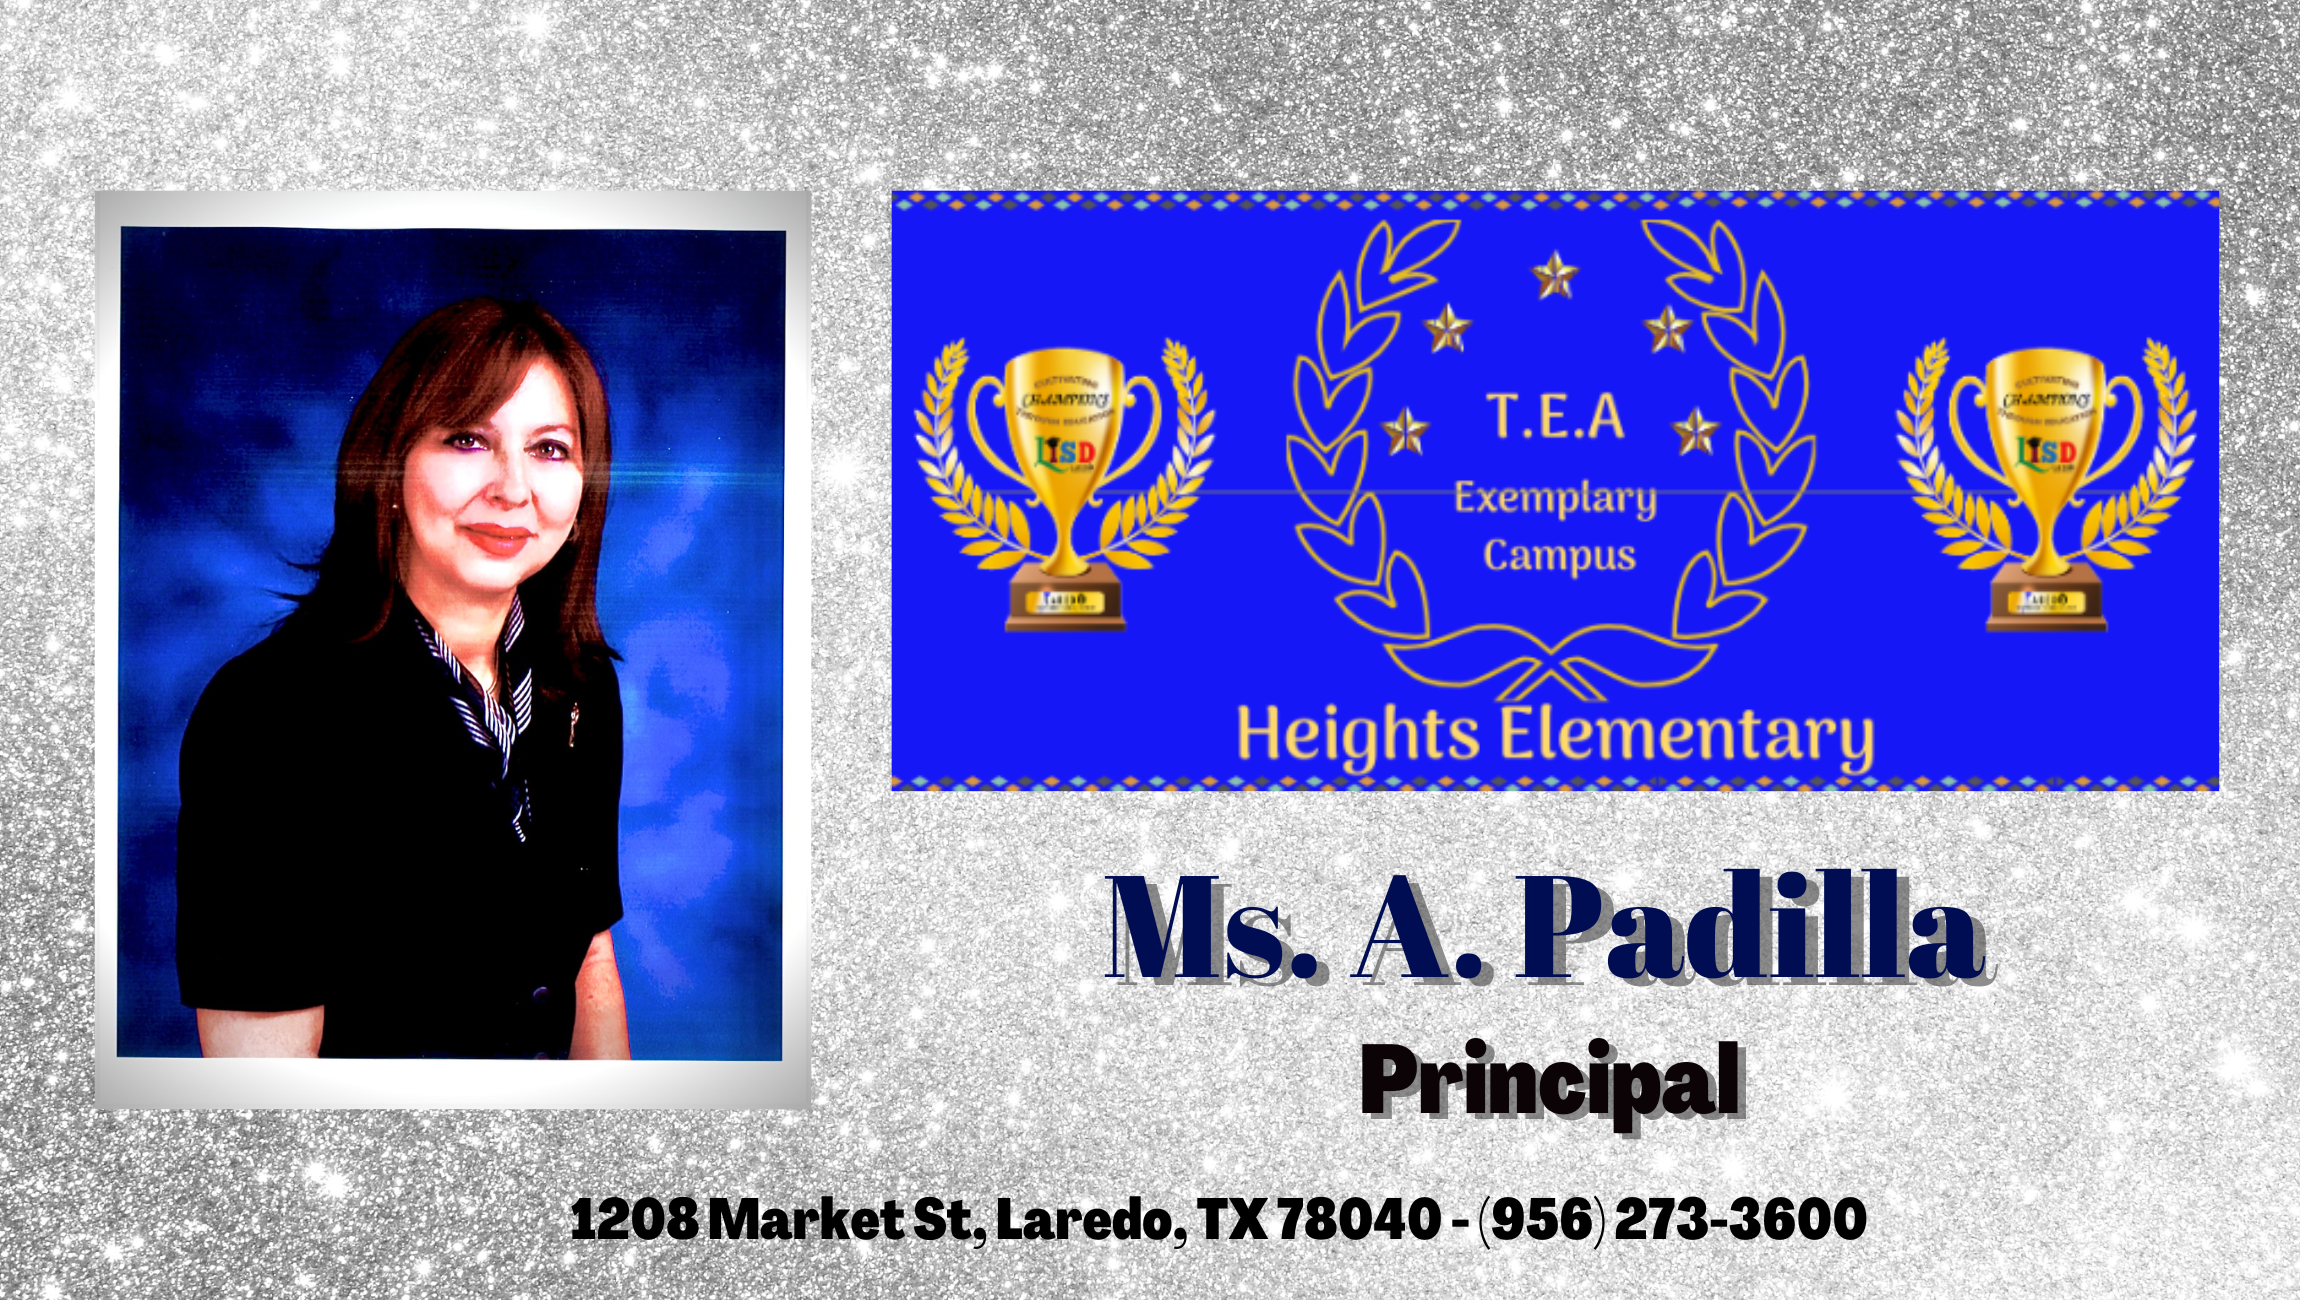 Ms. A. Padilla Principal-Thrillshare banner